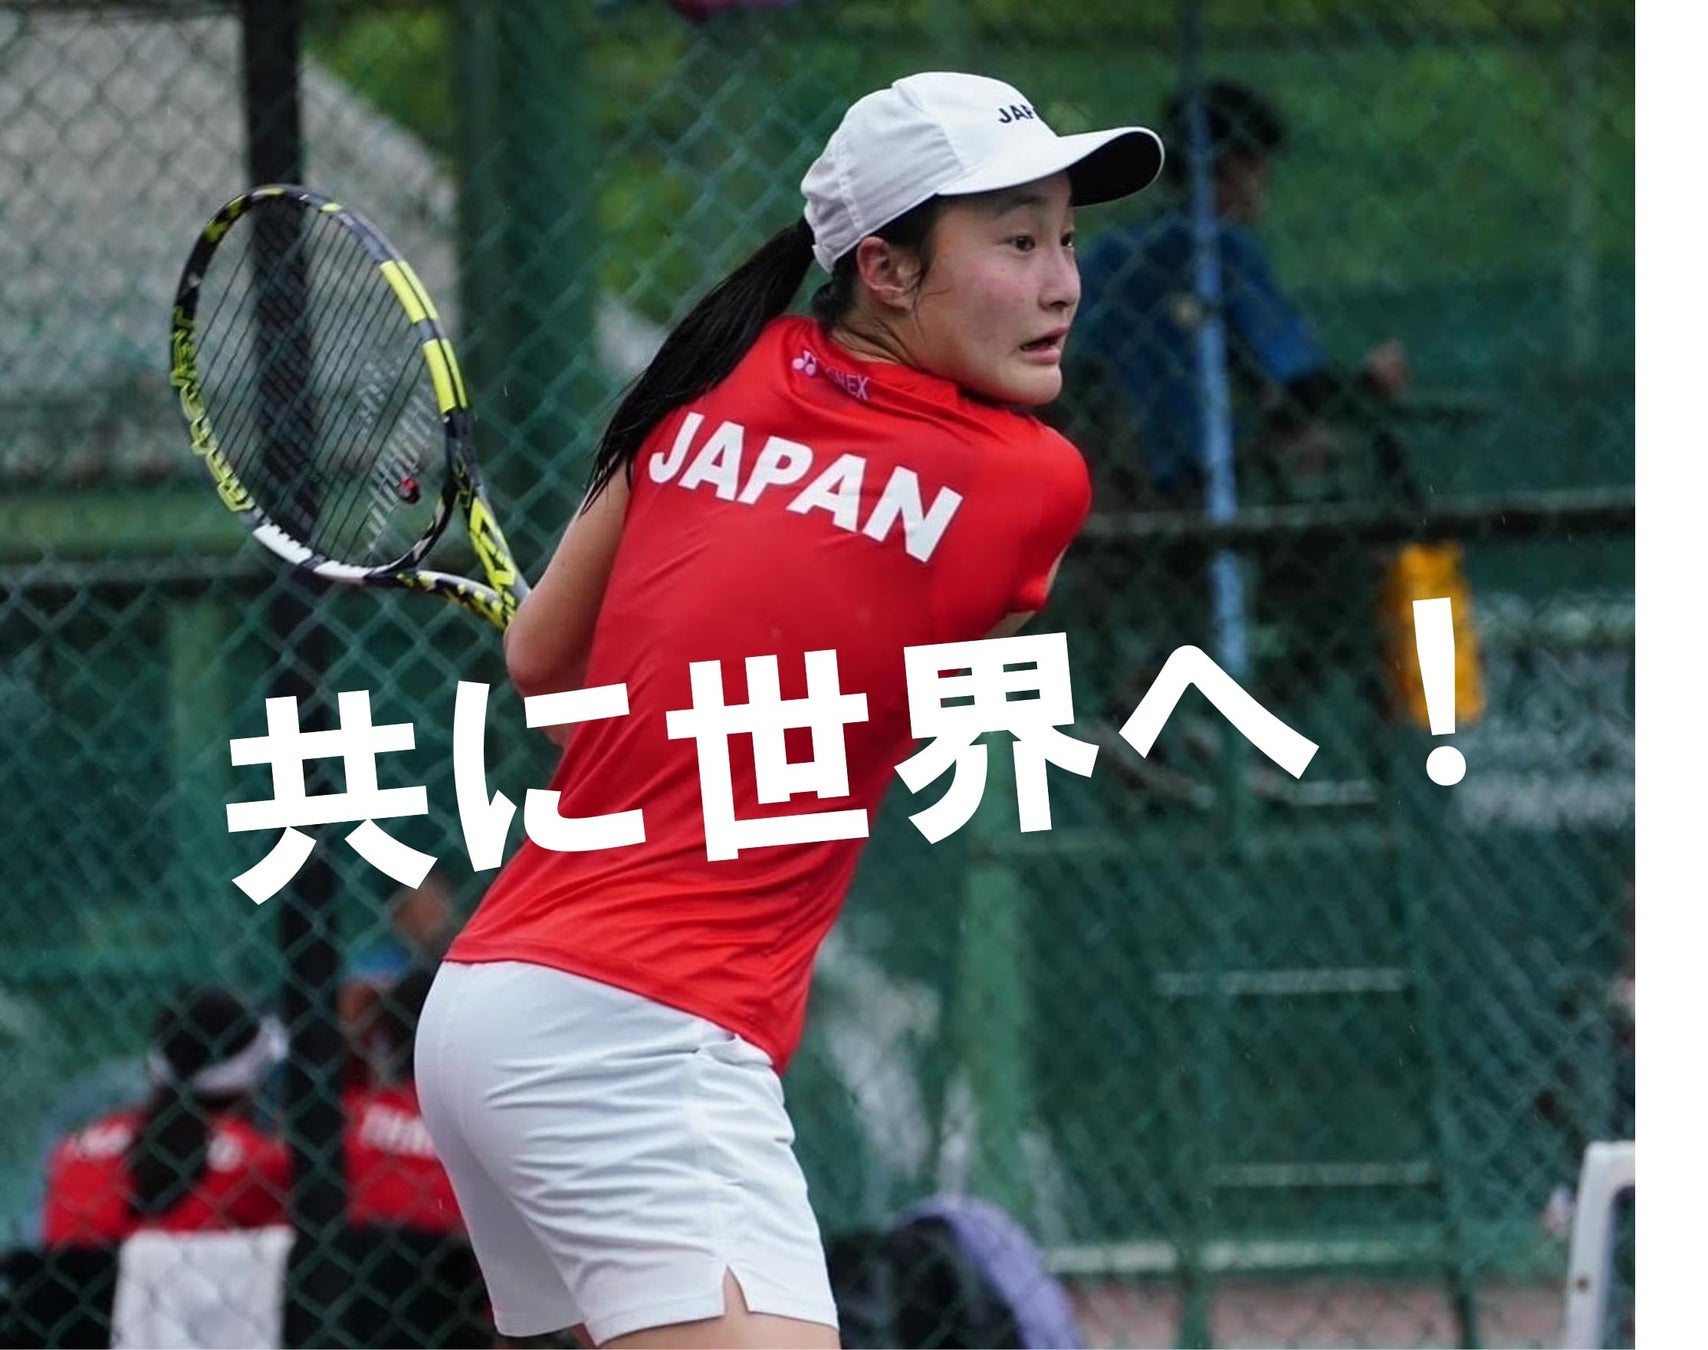 ワールドジュニア（14歳以下女子国別対抗戦）日本代表に駒田唯衣（ノアテニスアカデミー）が選出　スポーツギフティングサービス「エンゲート」で選手を応援